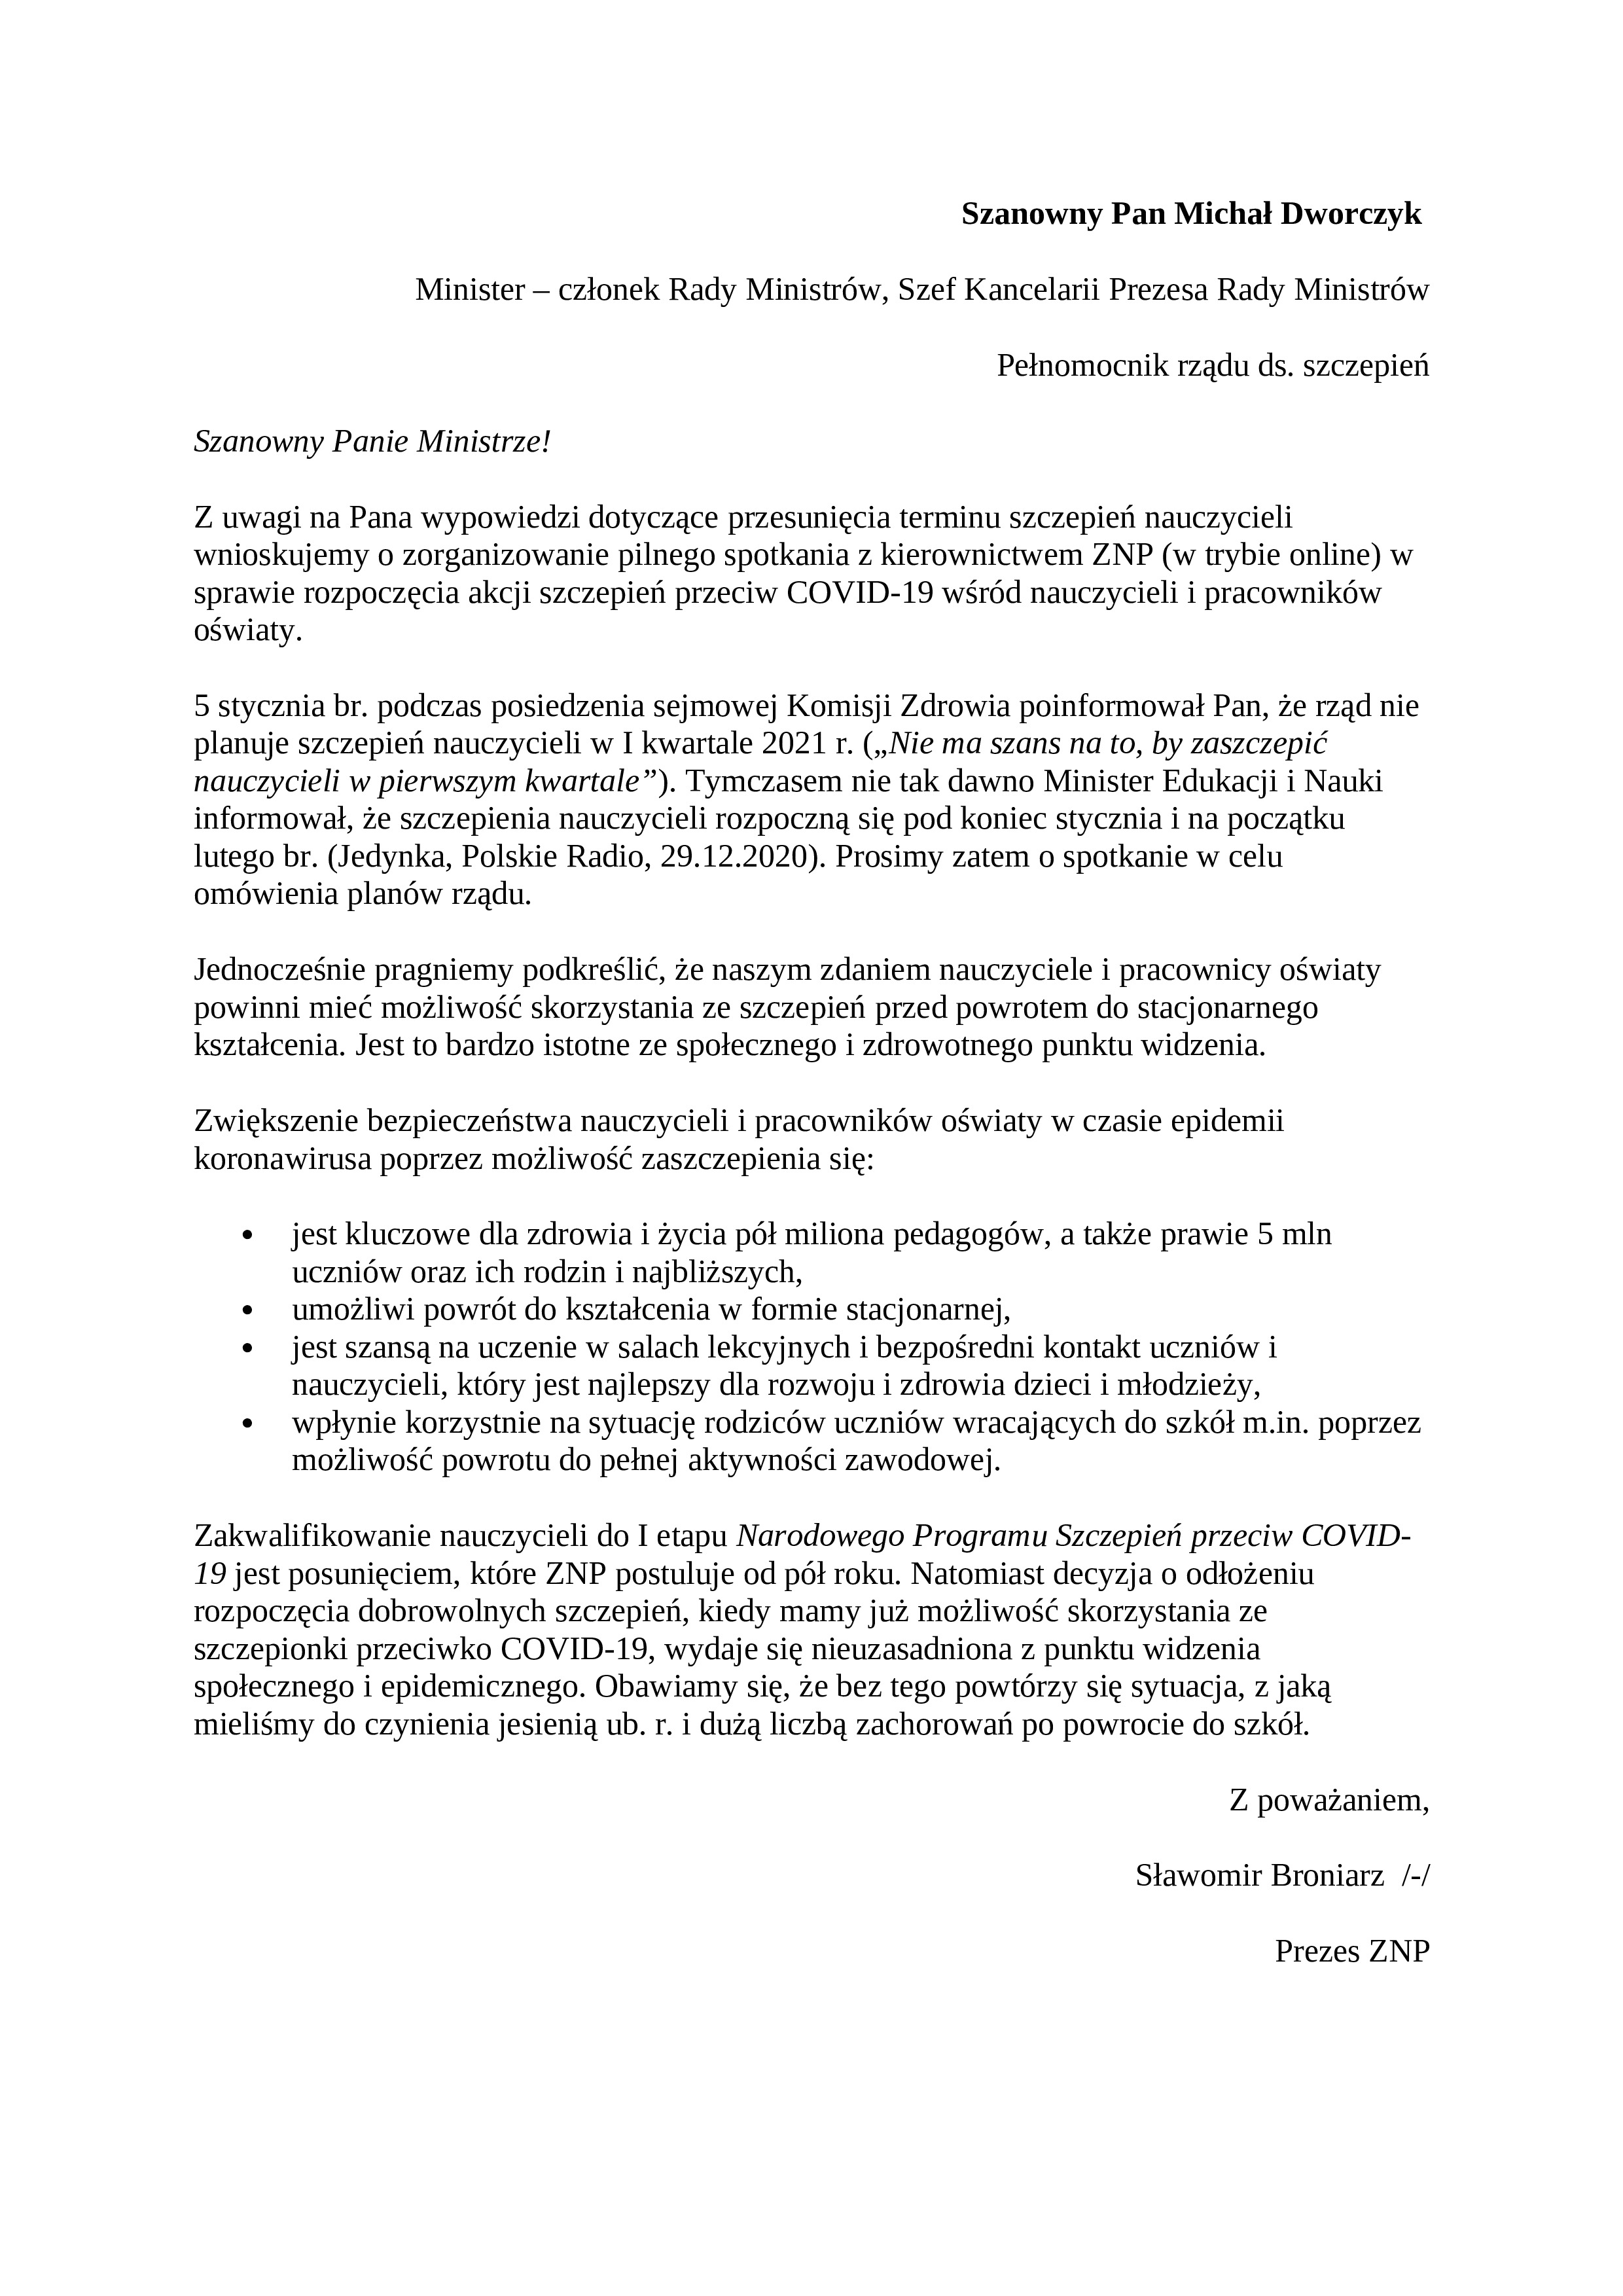 List-Prezesa-ZNP-1